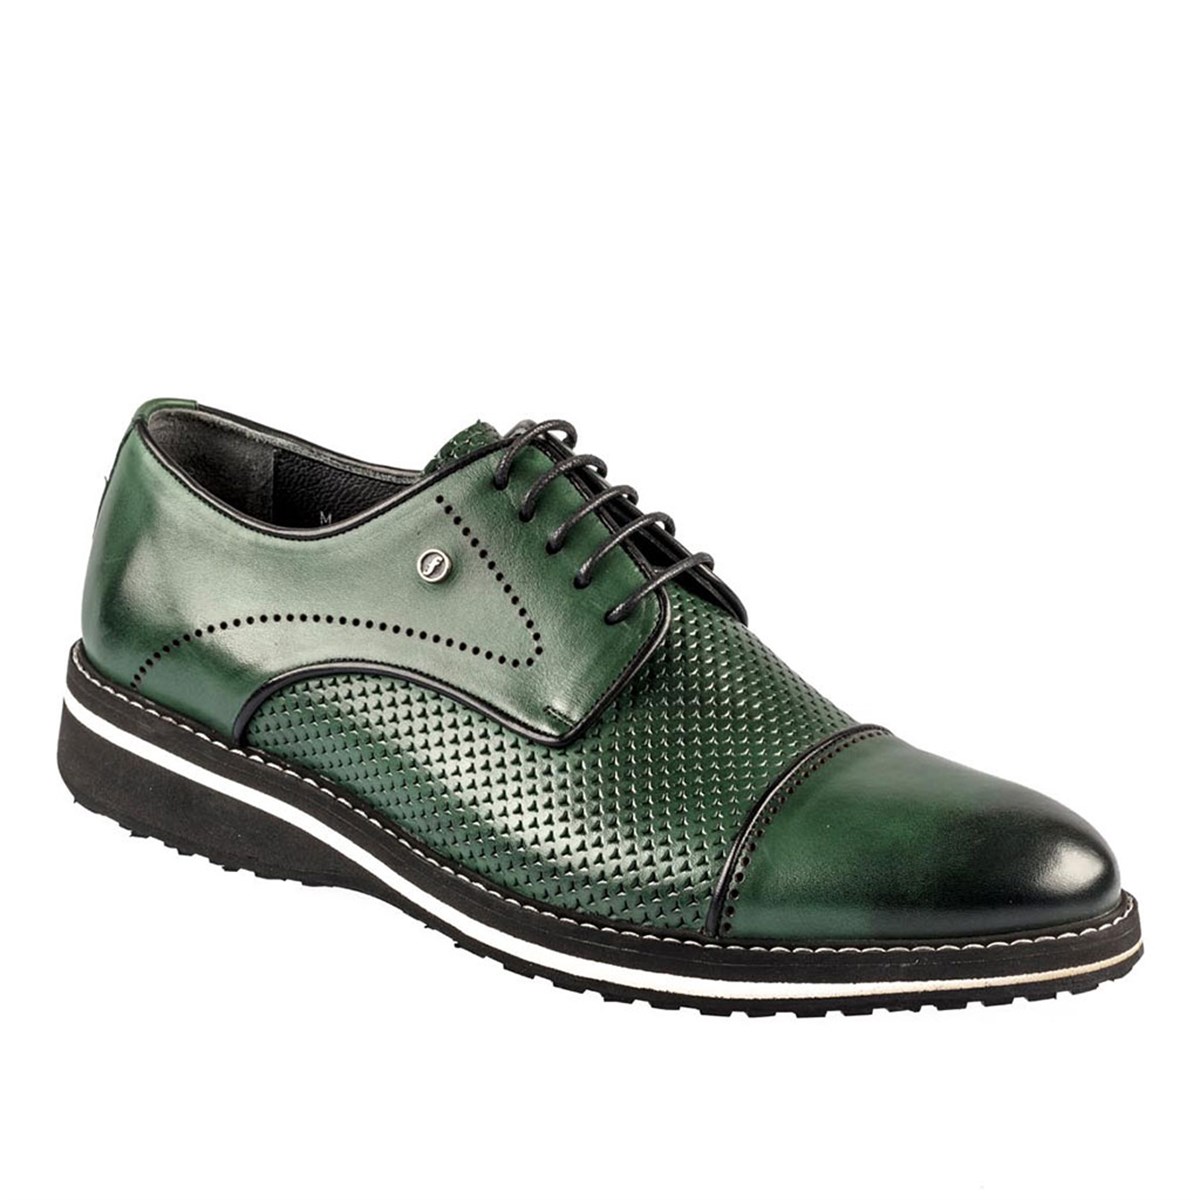 Erkek Haki-Yeşil Hakiki Deri Bağcıklı Hafif Eva Taban Günlük Ayakkabı, Renk: Yeşil, Beden: 42